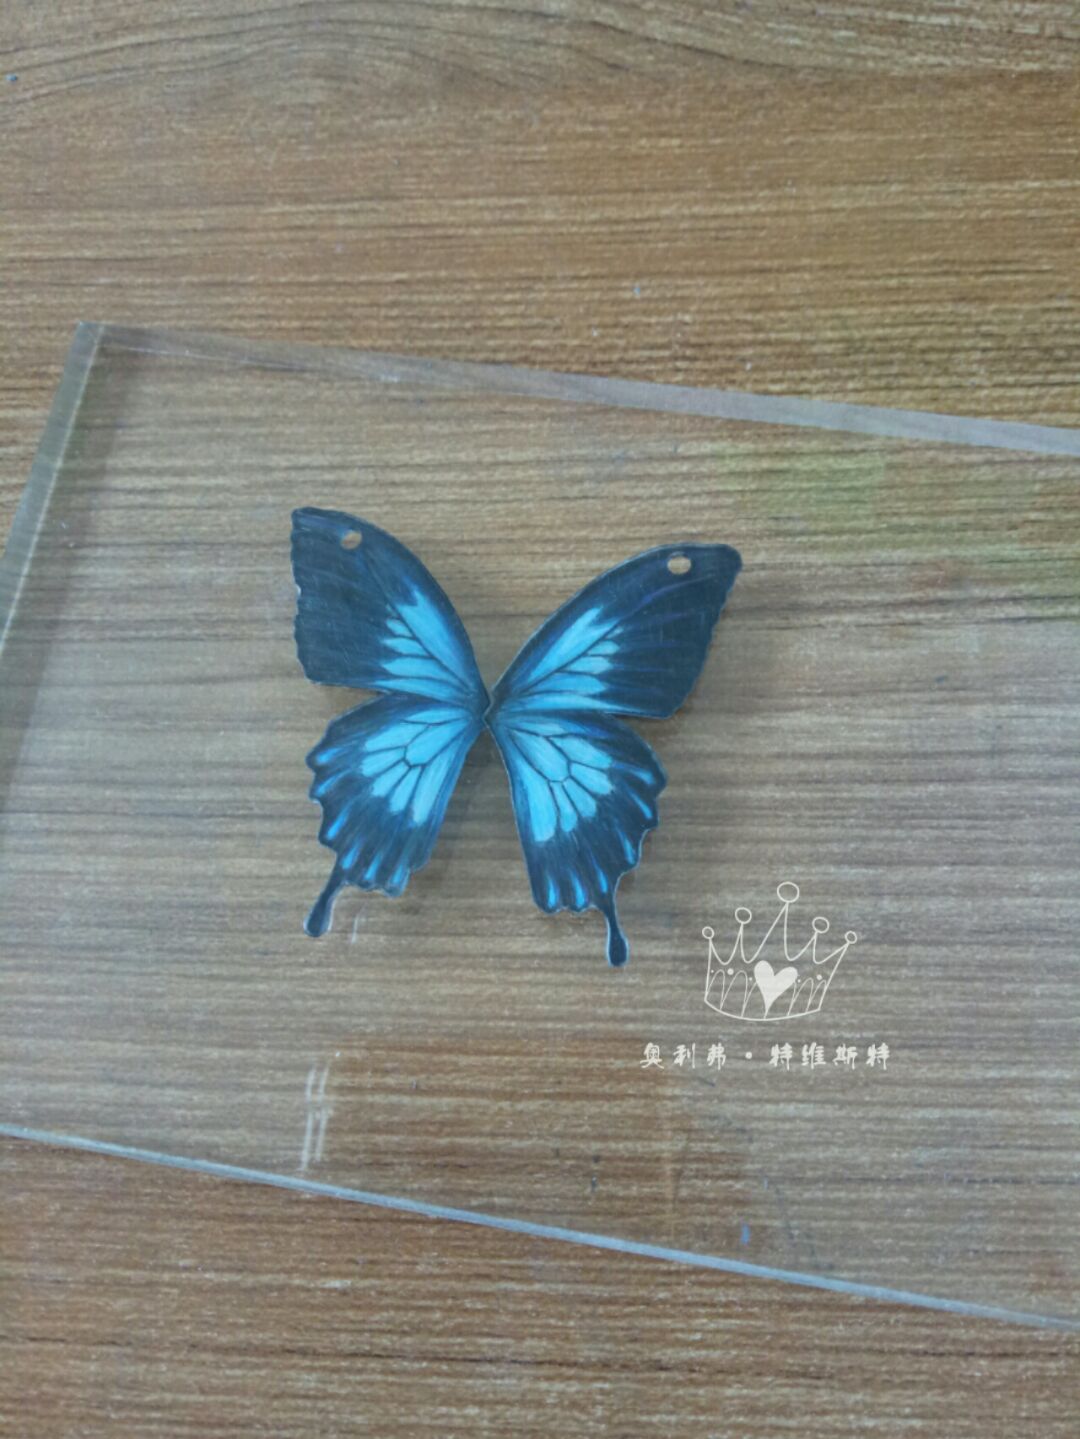 天堂凤蝶，又称琉璃凤蝶、英雄凤蝶。澳大利亚的最美丽的蝴蝶，也是国蝶。